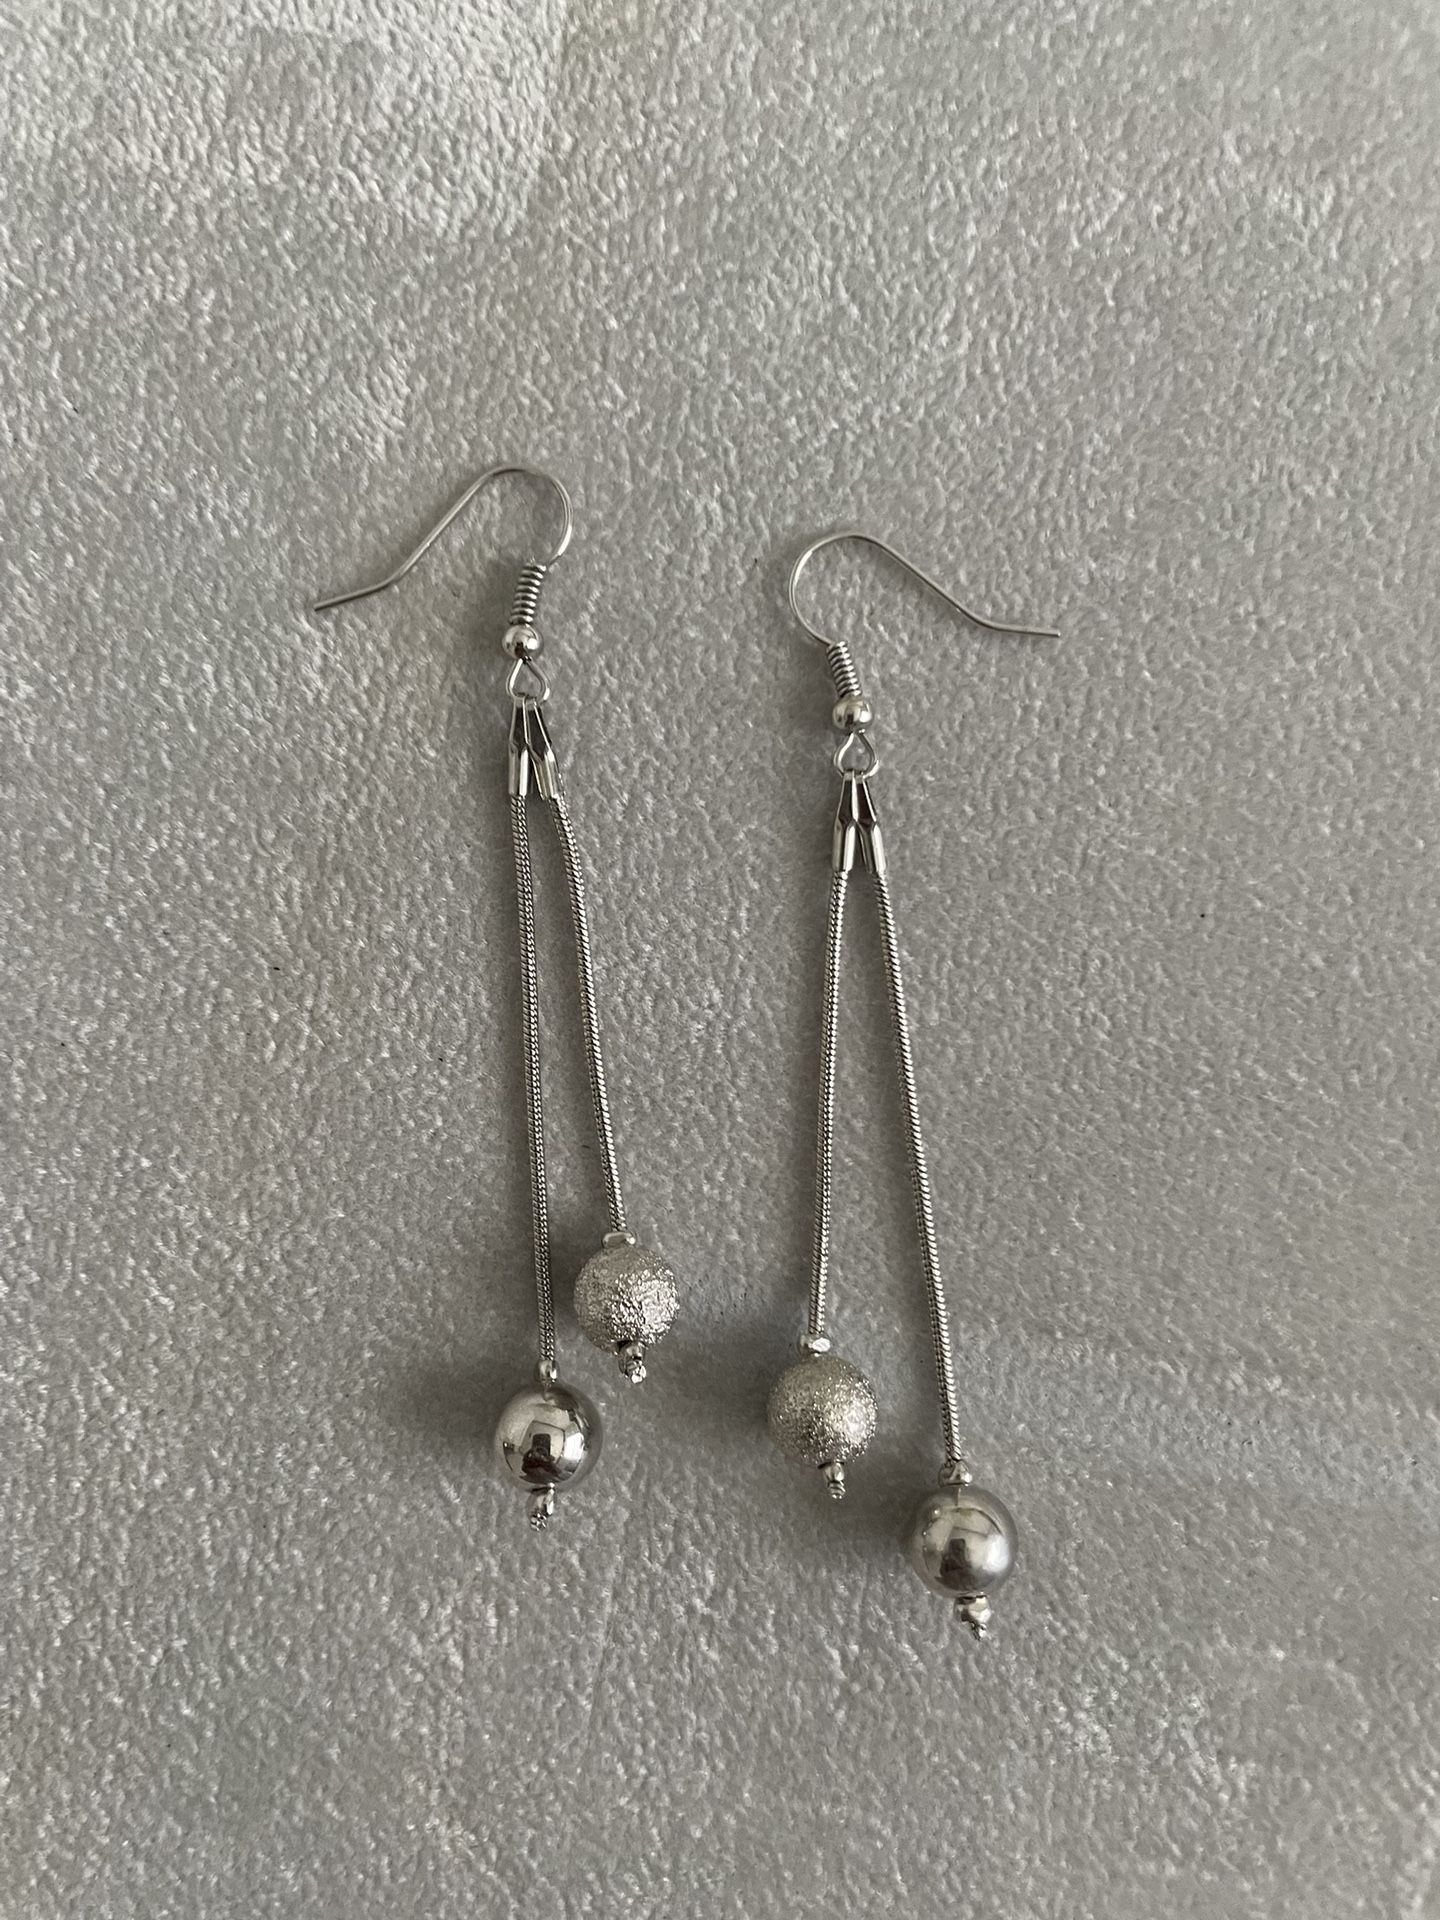 Vintage Silver Earrings